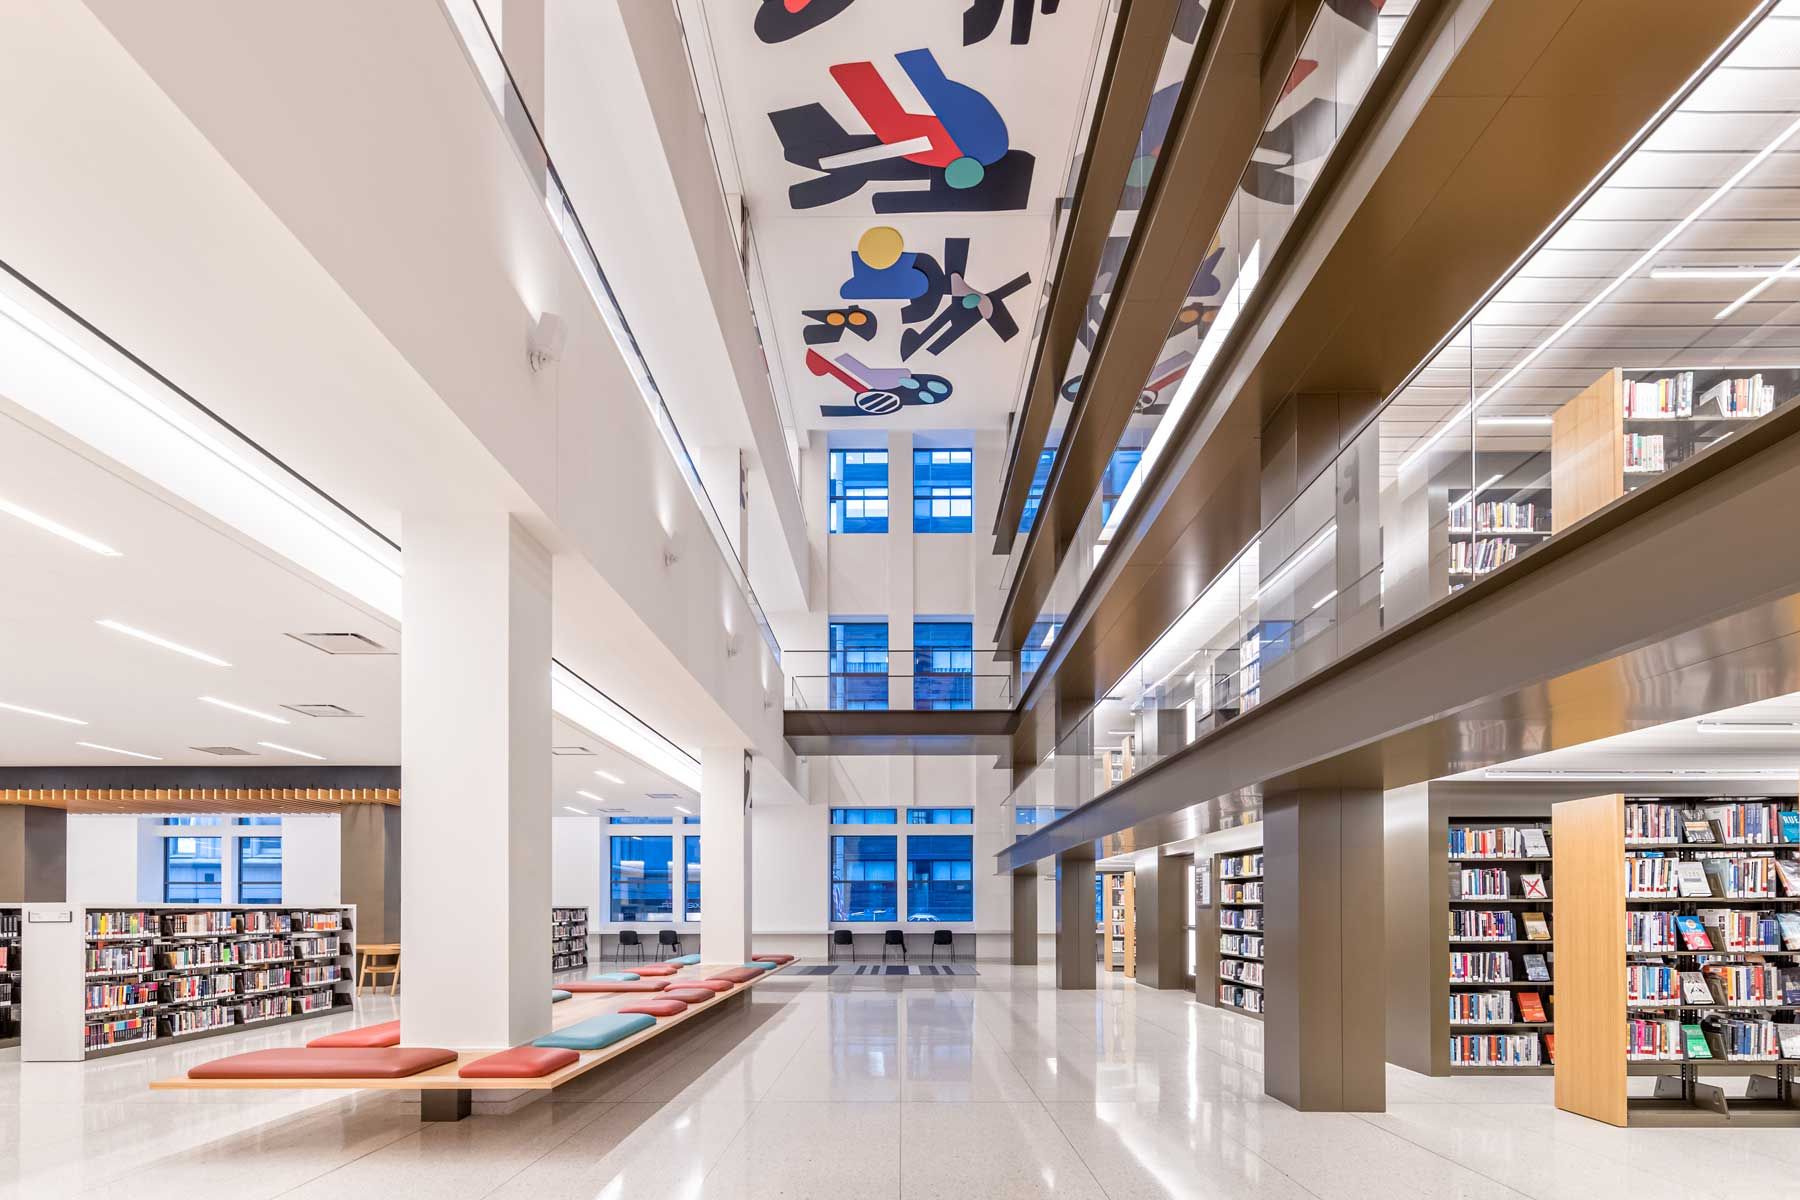 ნიუ იორკის საჯარო ბიბლიოთეკის მანჰეტენის მდებარეობის სახურავზე და ინტერიერის განახლება